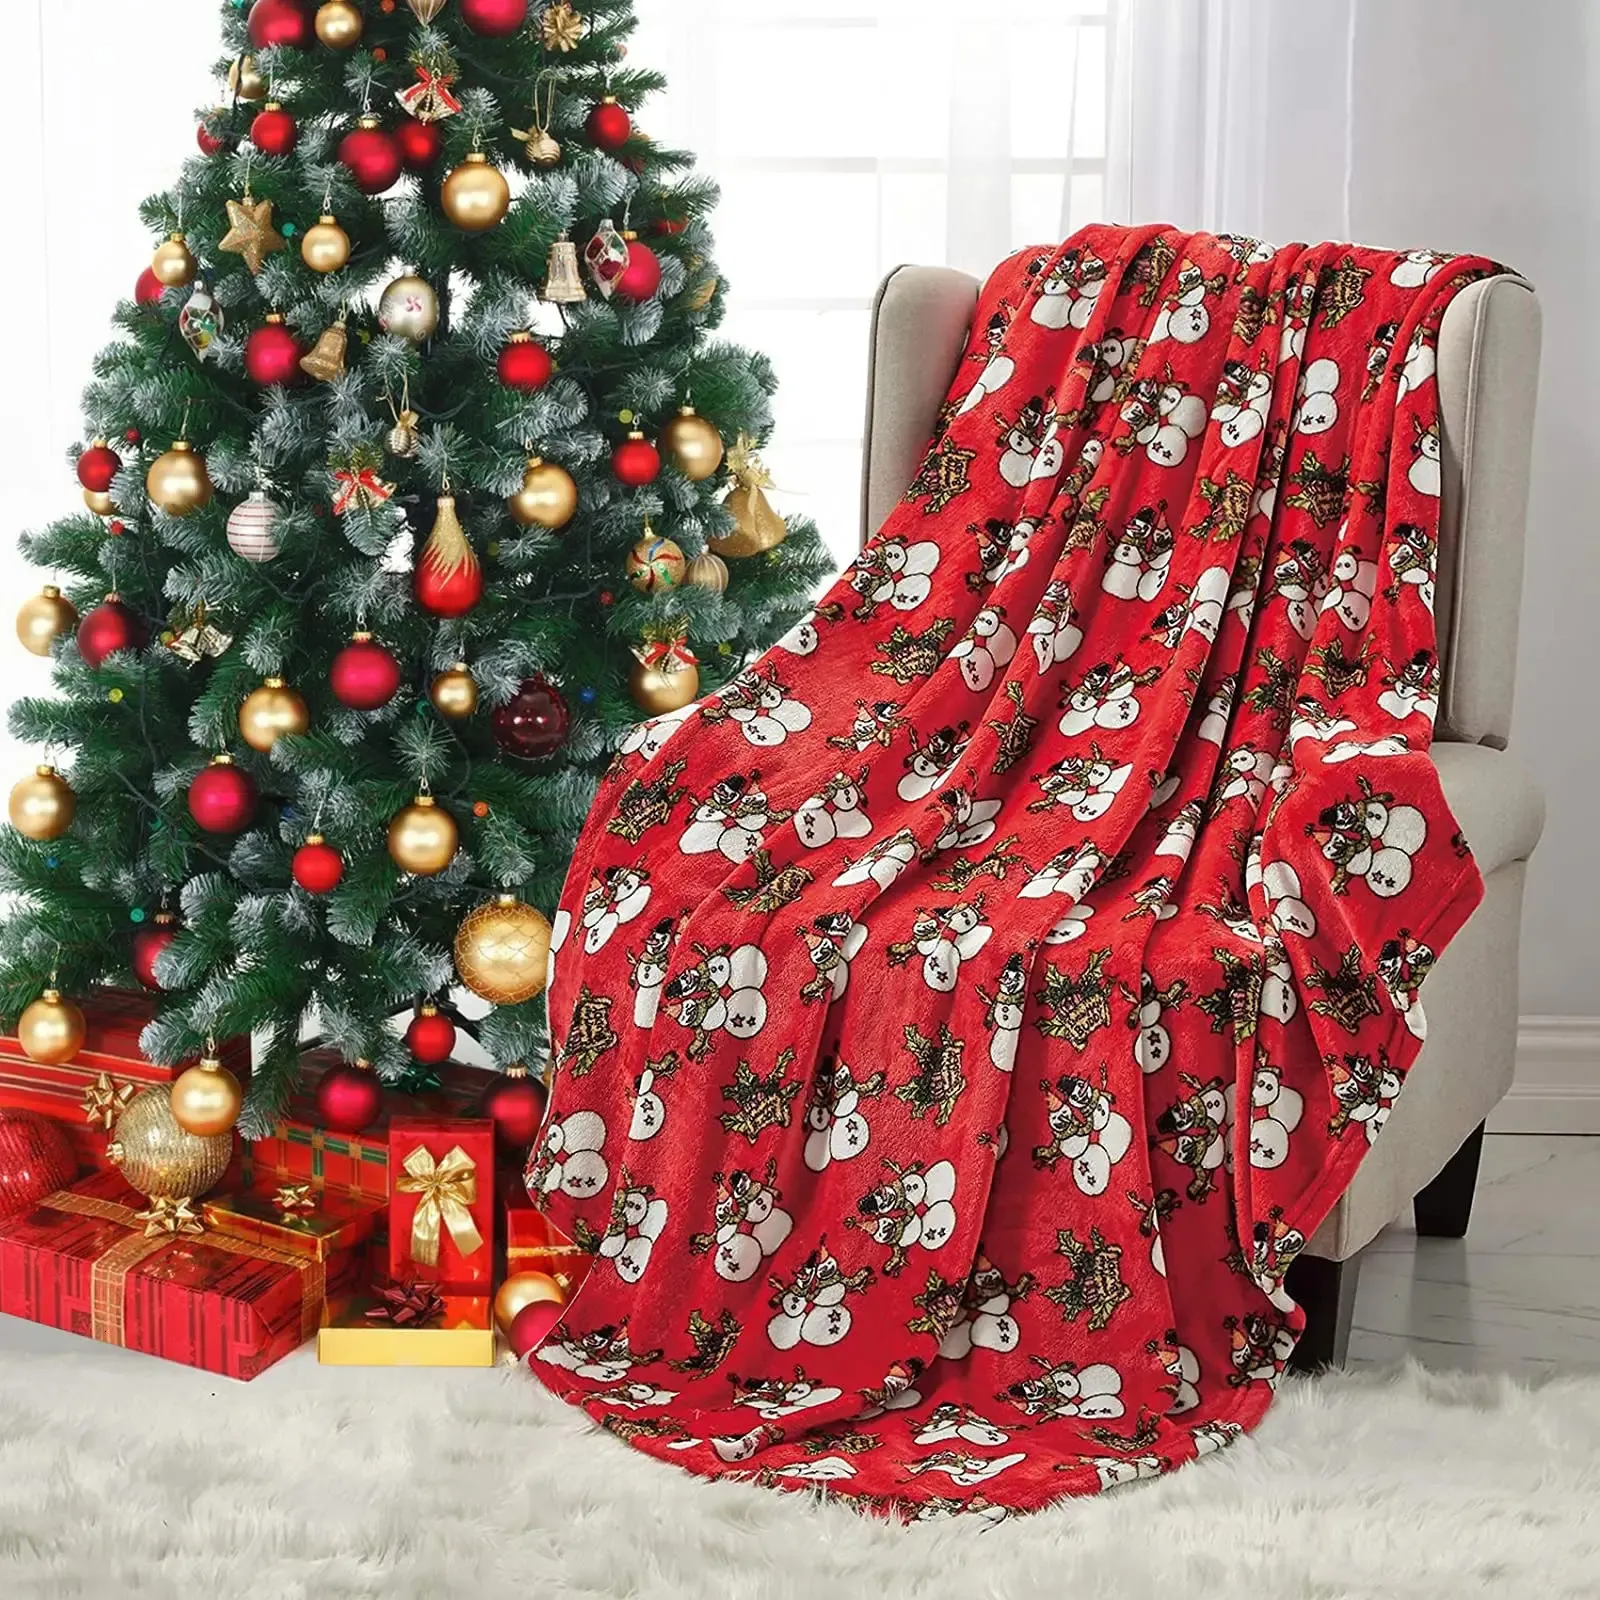 Одеяла Рождественское одеяло со снеговиком Красное рождественское одеяло Мягкое плюшевое теплое зимнее одеяло для домика Праздник День рождения Рождественские подарки 231204